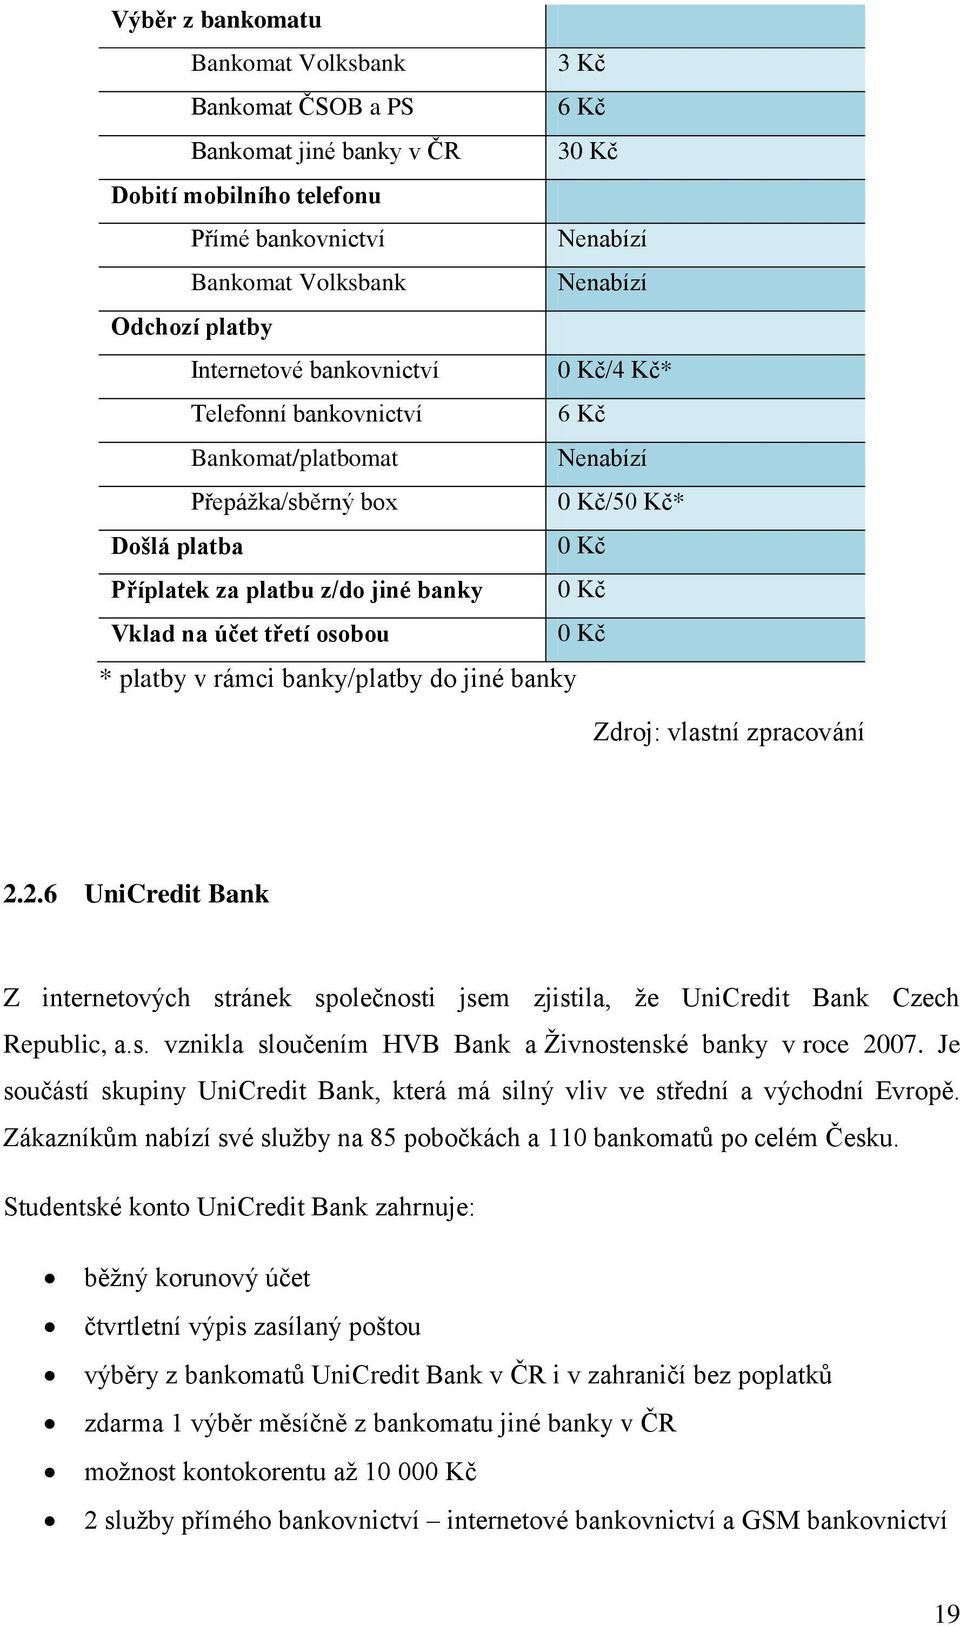 rámci banky/platby do jiné banky Zdroj: vlastní zpracování 2.2.6 UniCredit Bank Z internetových stránek společnosti jsem zjistila, ţe UniCredit Bank Czech Republic, a.s. vznikla sloučením HVB Bank a Ţivnostenské banky v roce 2007.